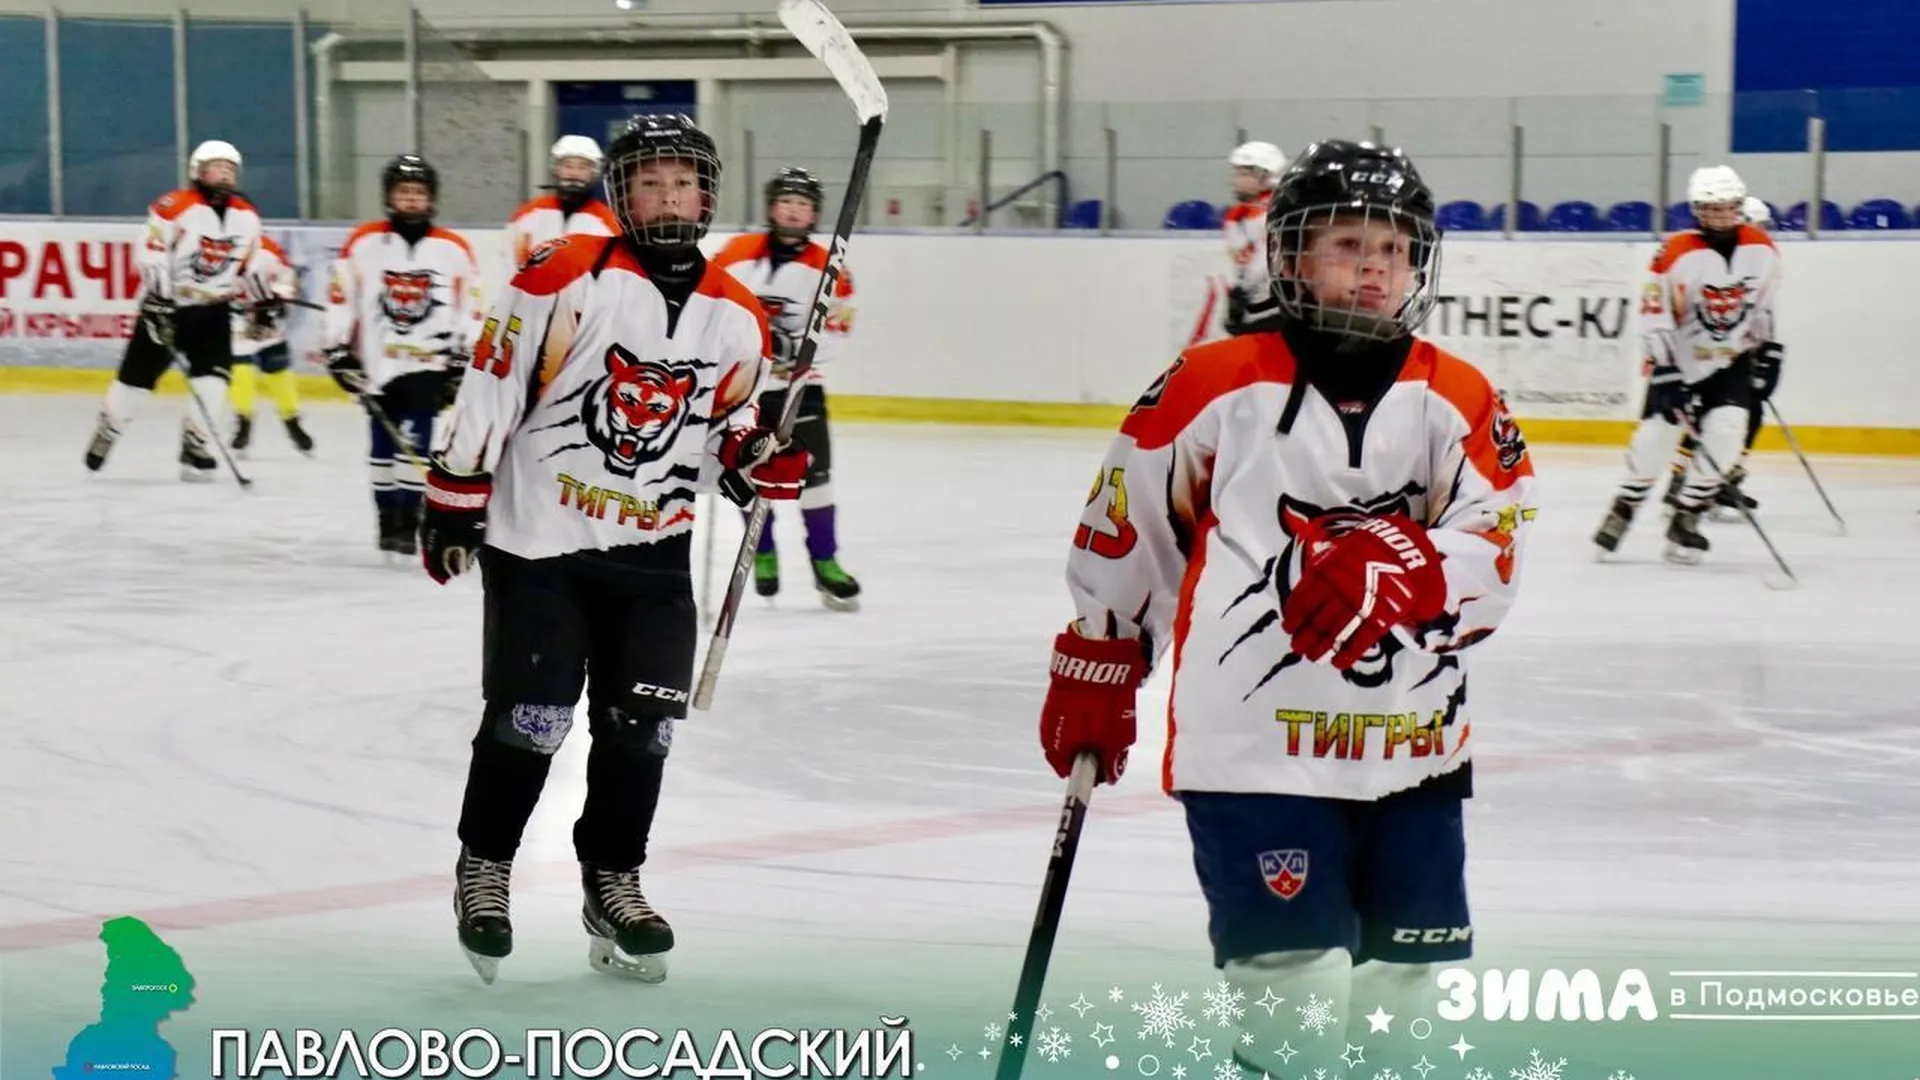 Денис Семенов побывал на тренировках юных хоккеистов команды «Тигры»